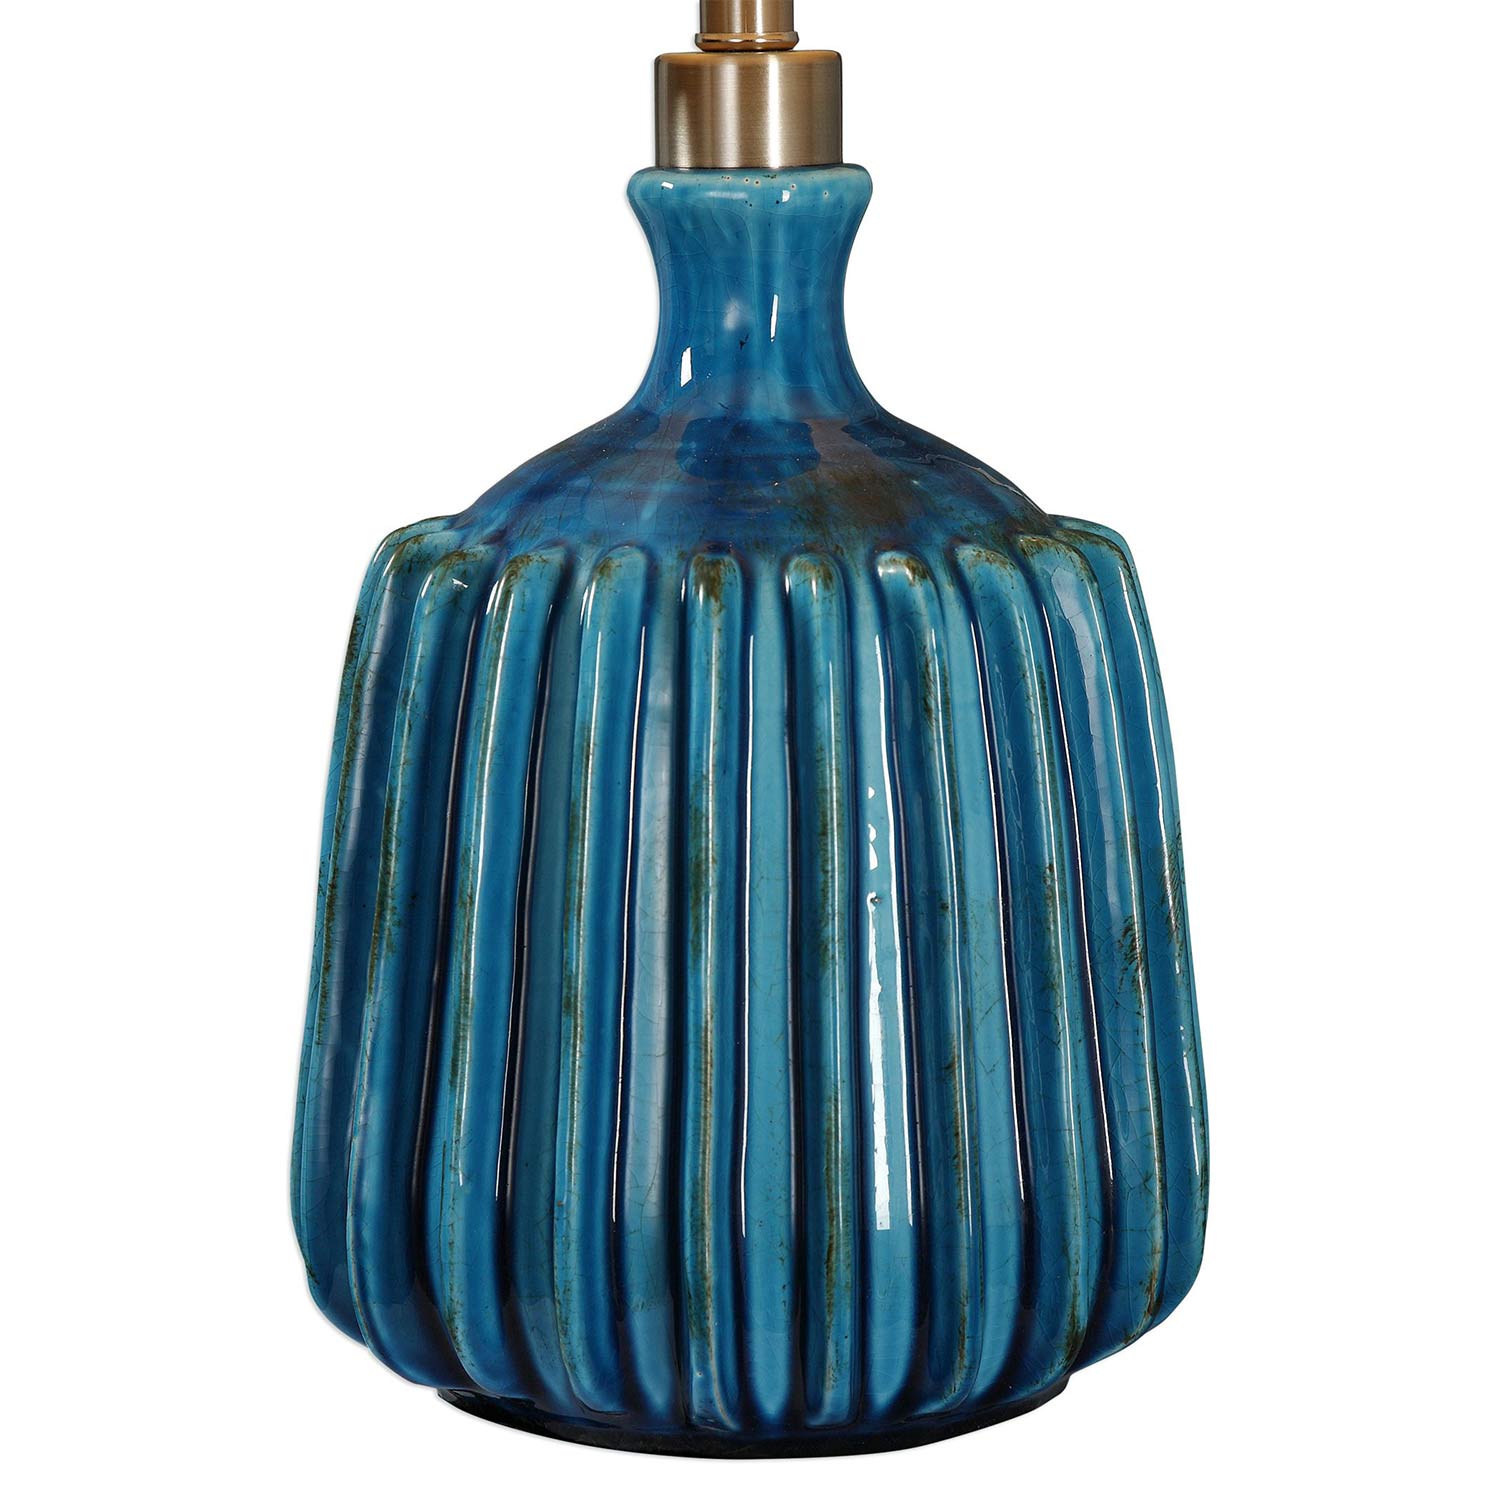 Uttermost Amaris Ceramic Lamp - Blue